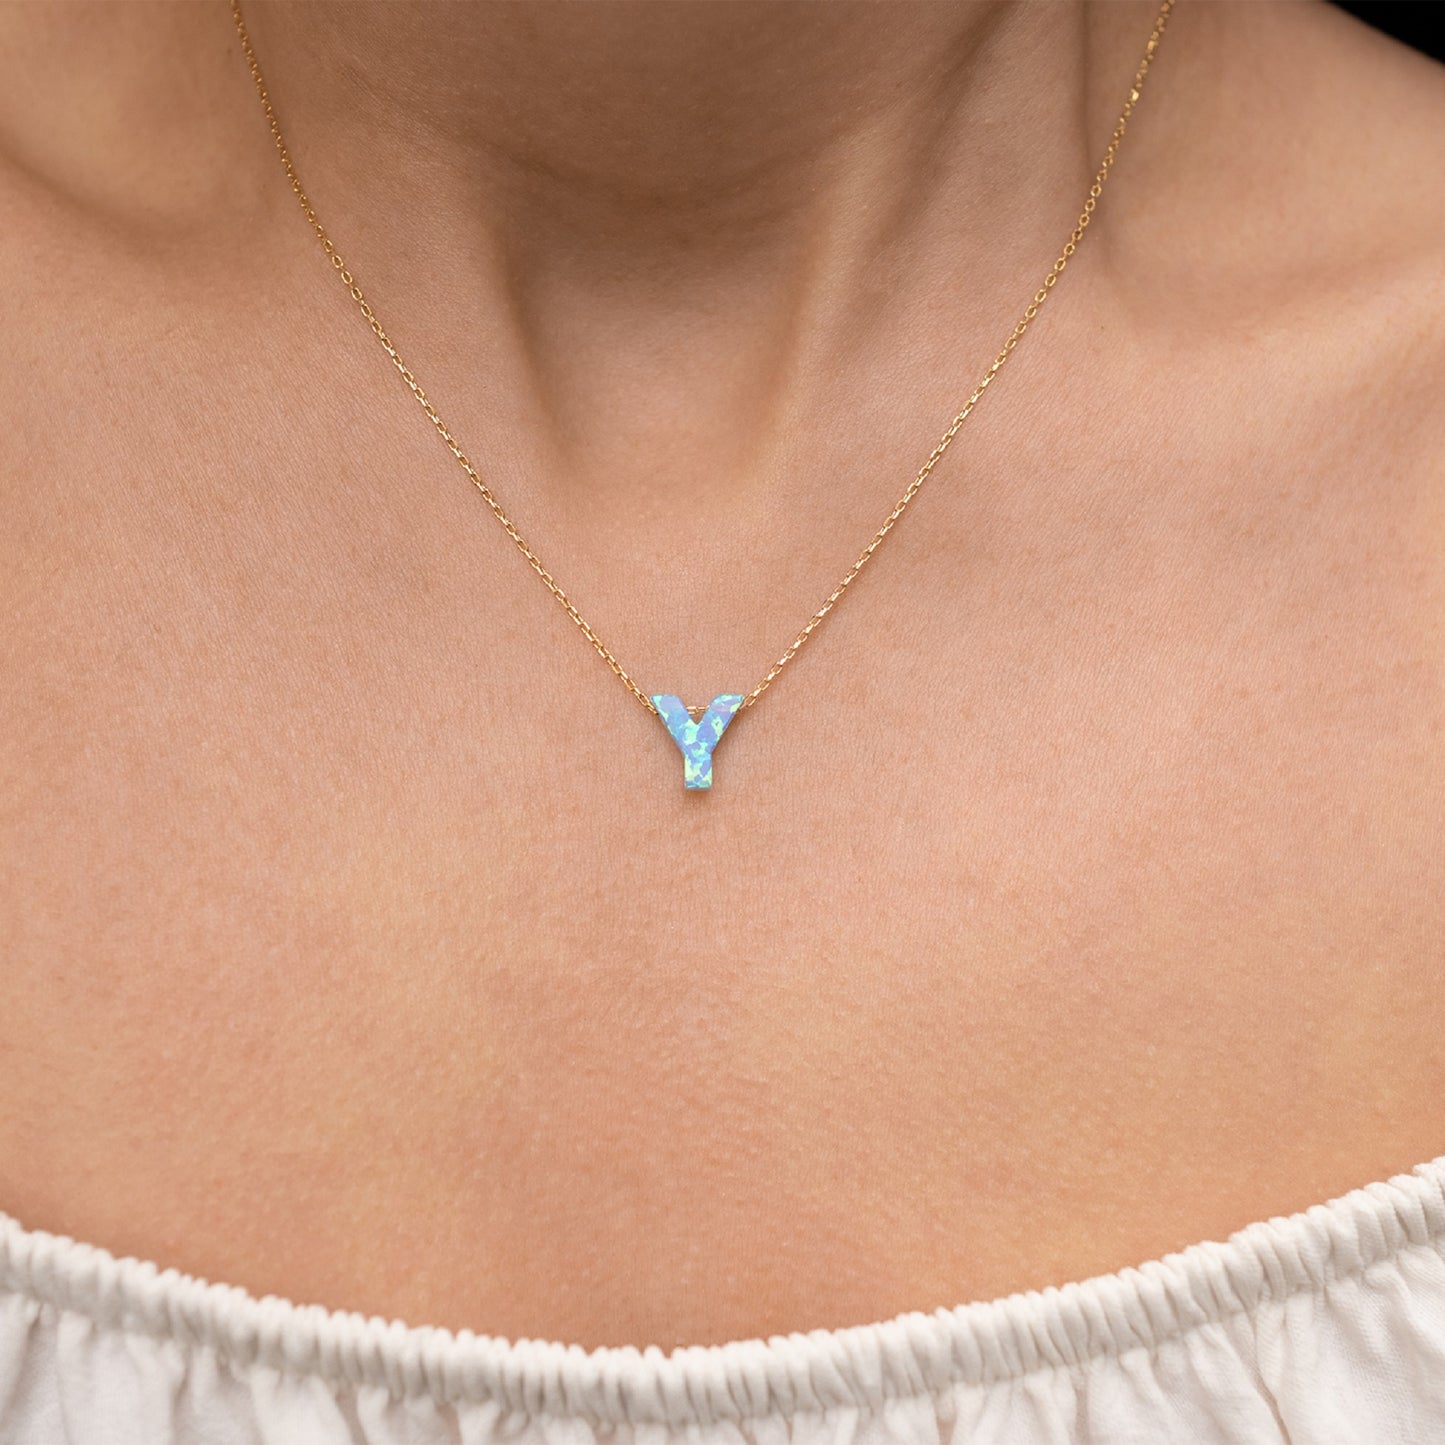 Blue Opal Initial Necklace - "Y" letter pendant